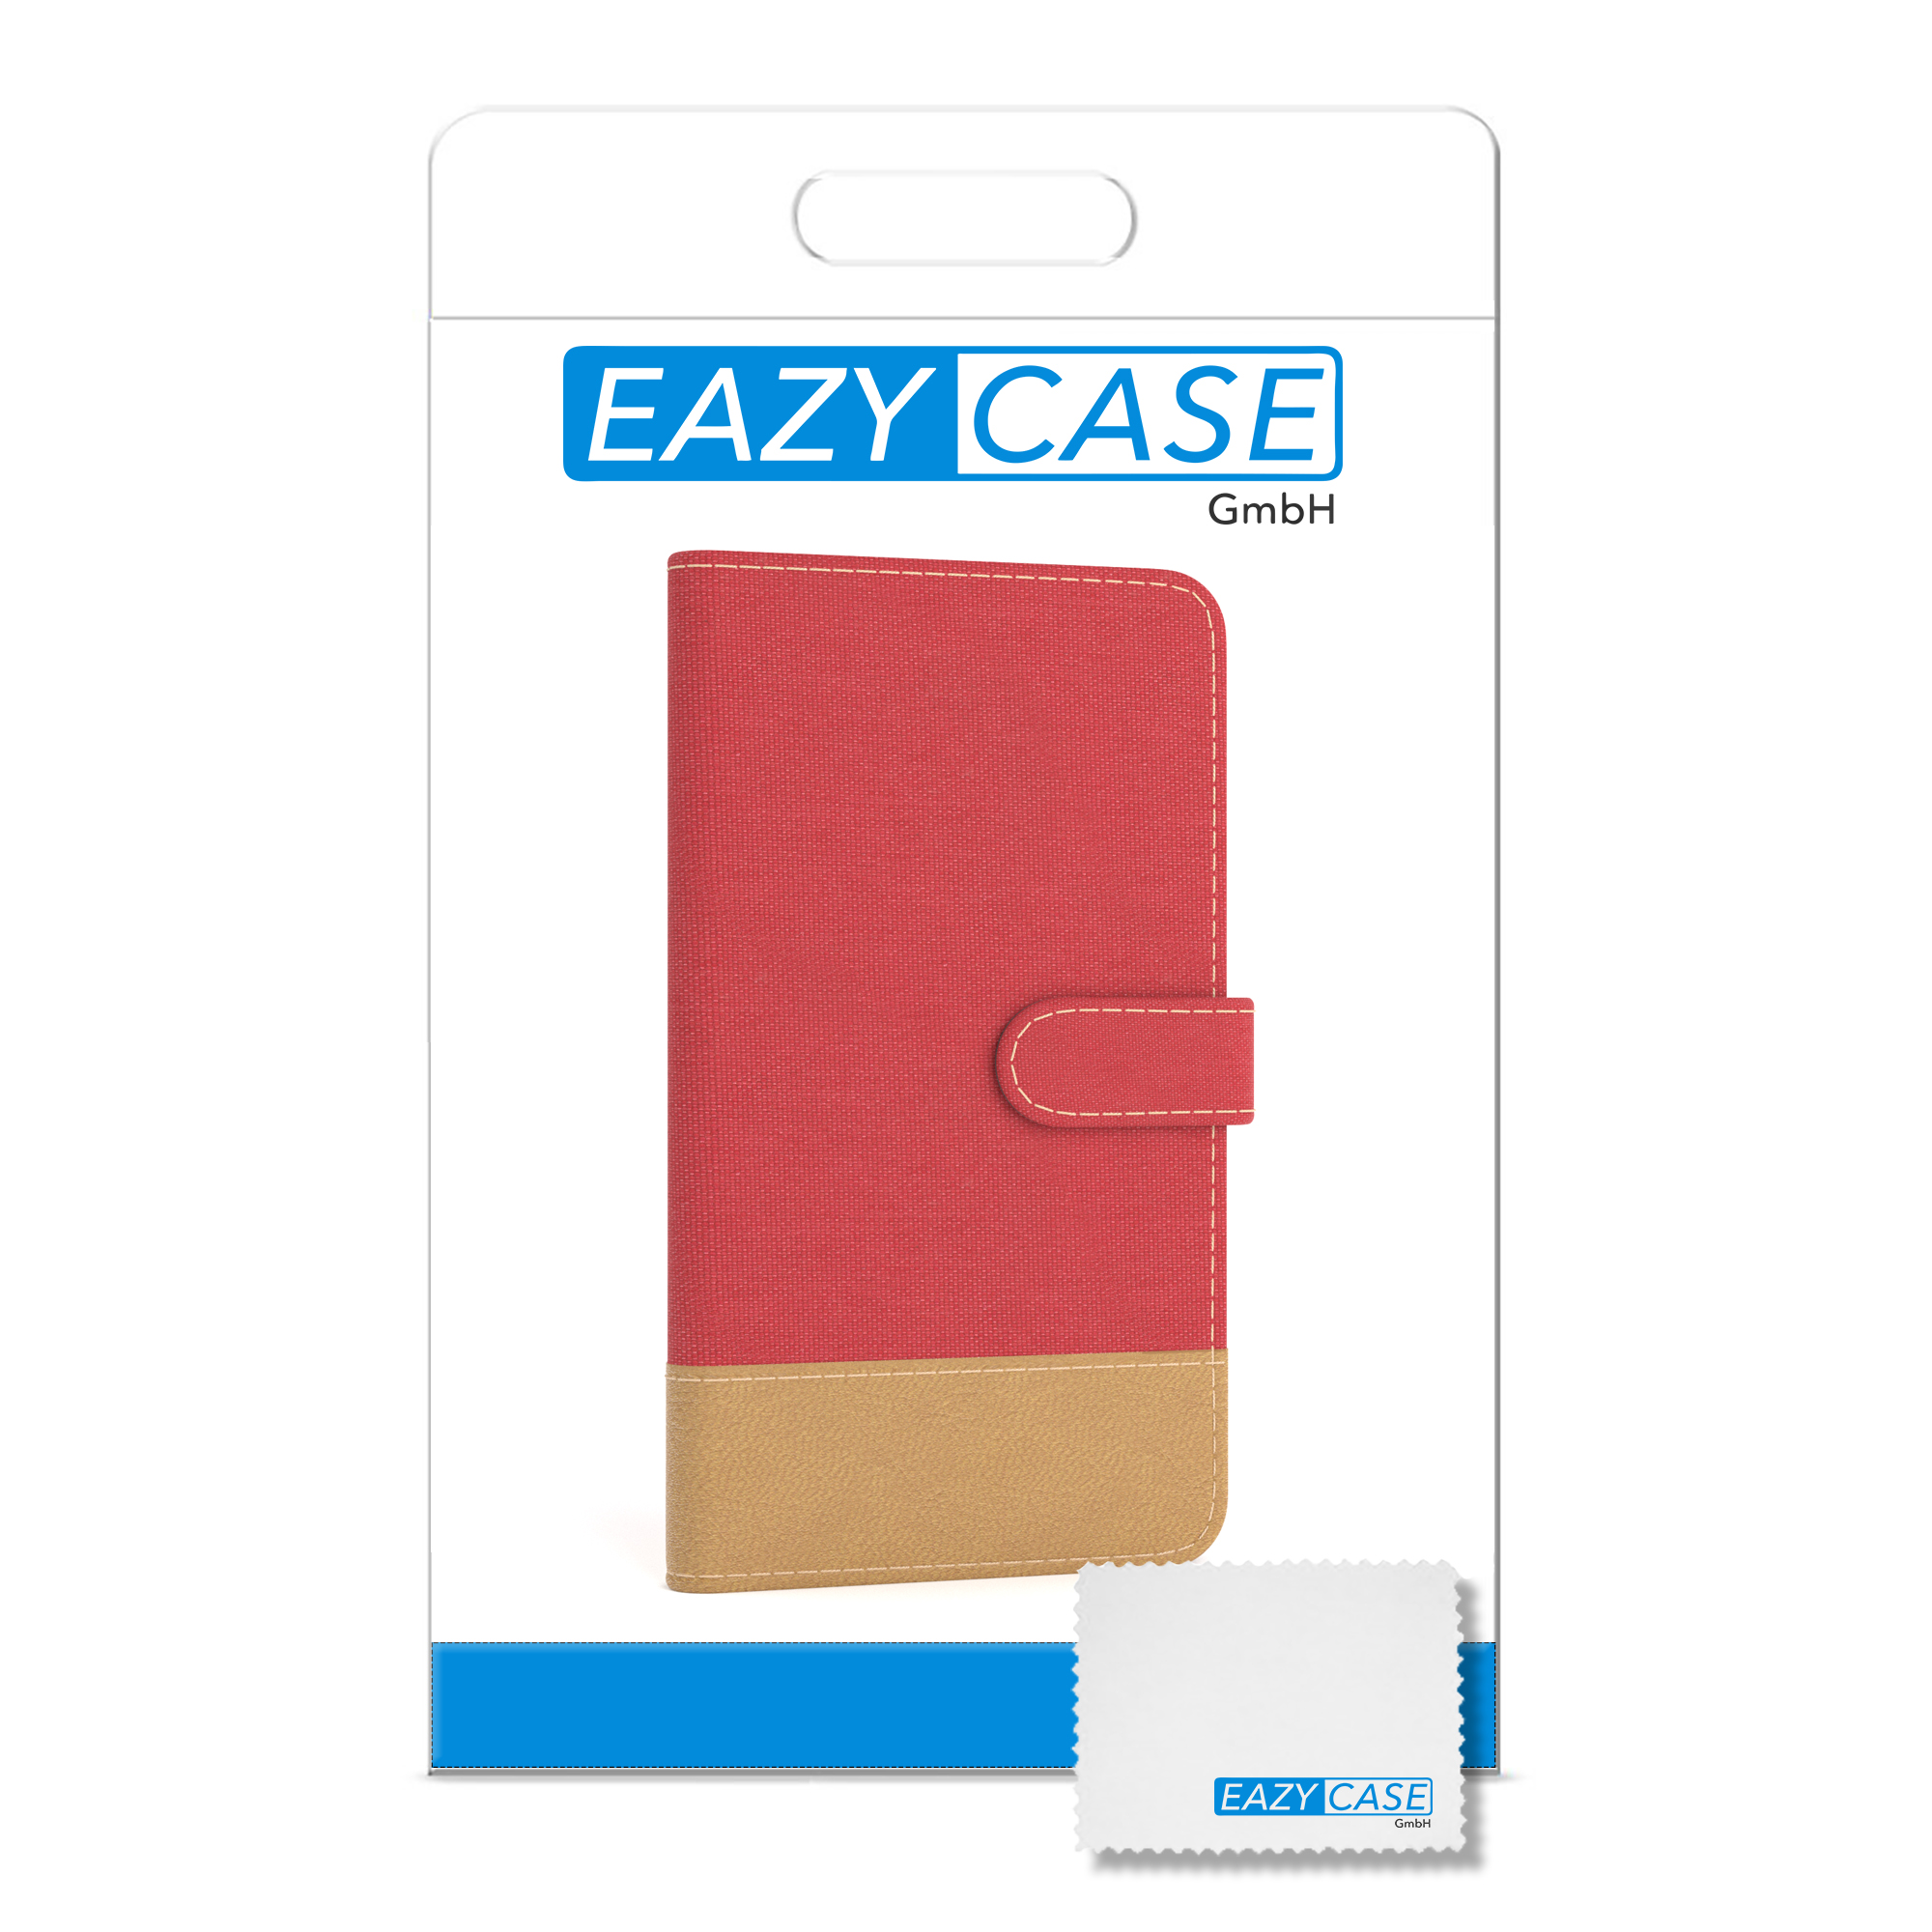 Klapphülle / Jeans Bookstyle Kartenfach, iPhone 8 EAZY Plus Apple, mit Plus, Rot 7 Bookcover, CASE